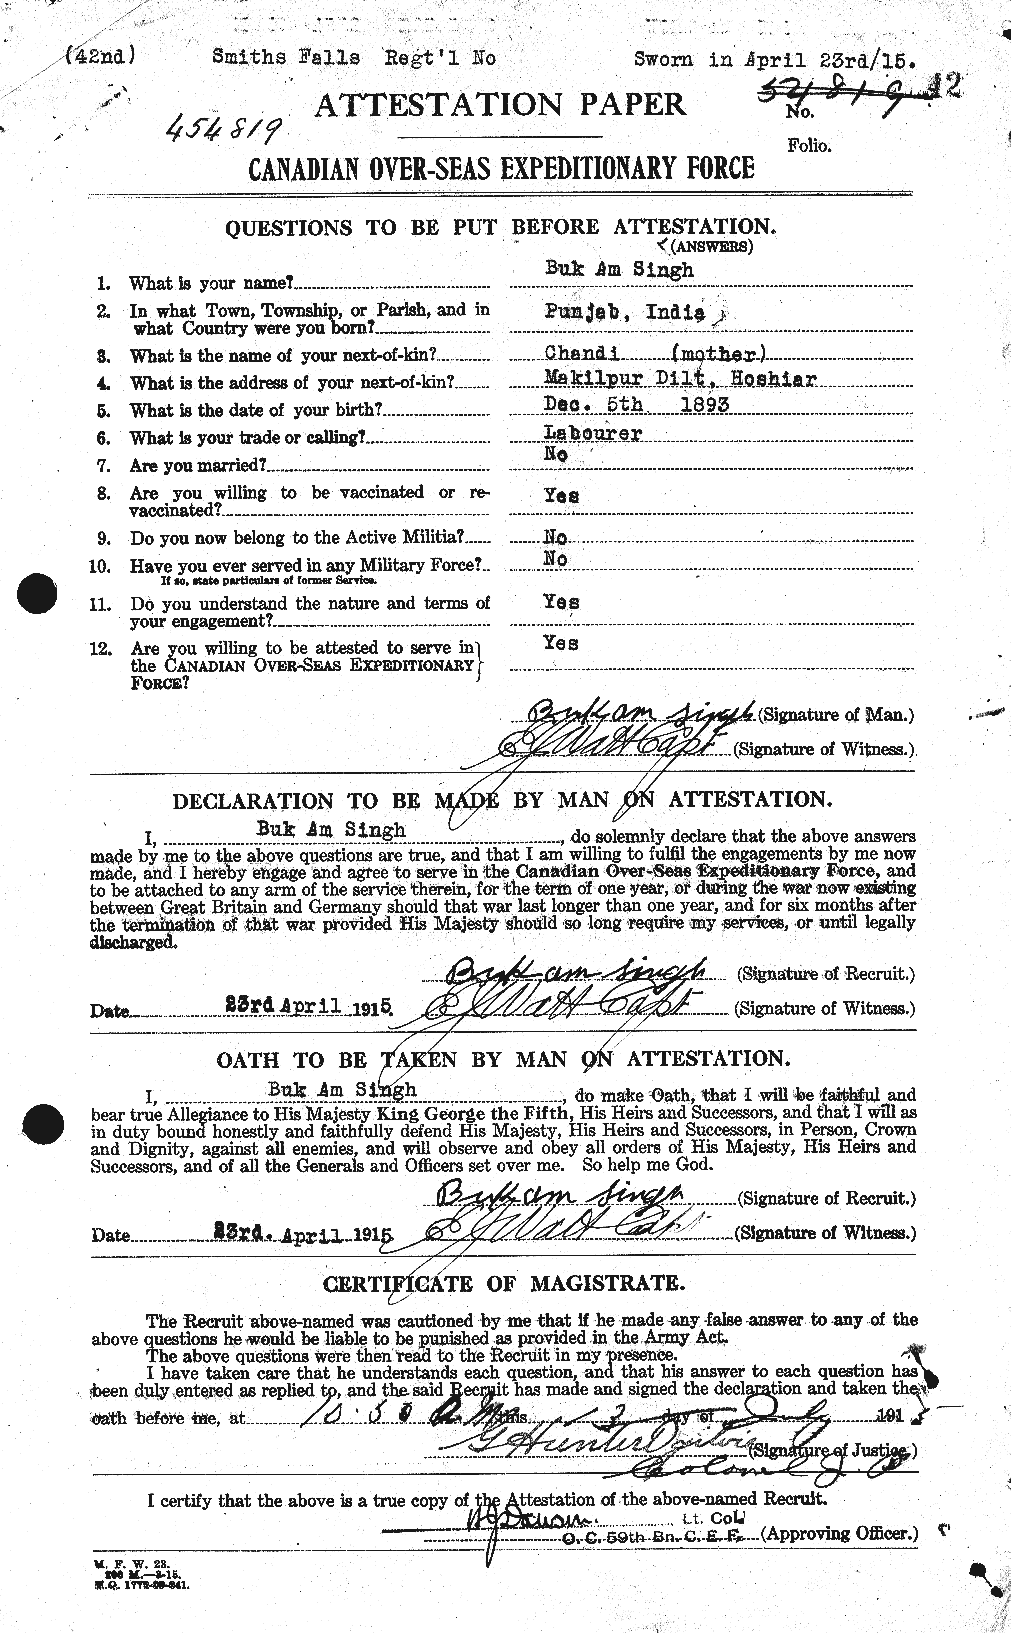 Dossiers du Personnel de la Première Guerre mondiale - CEC 100699a